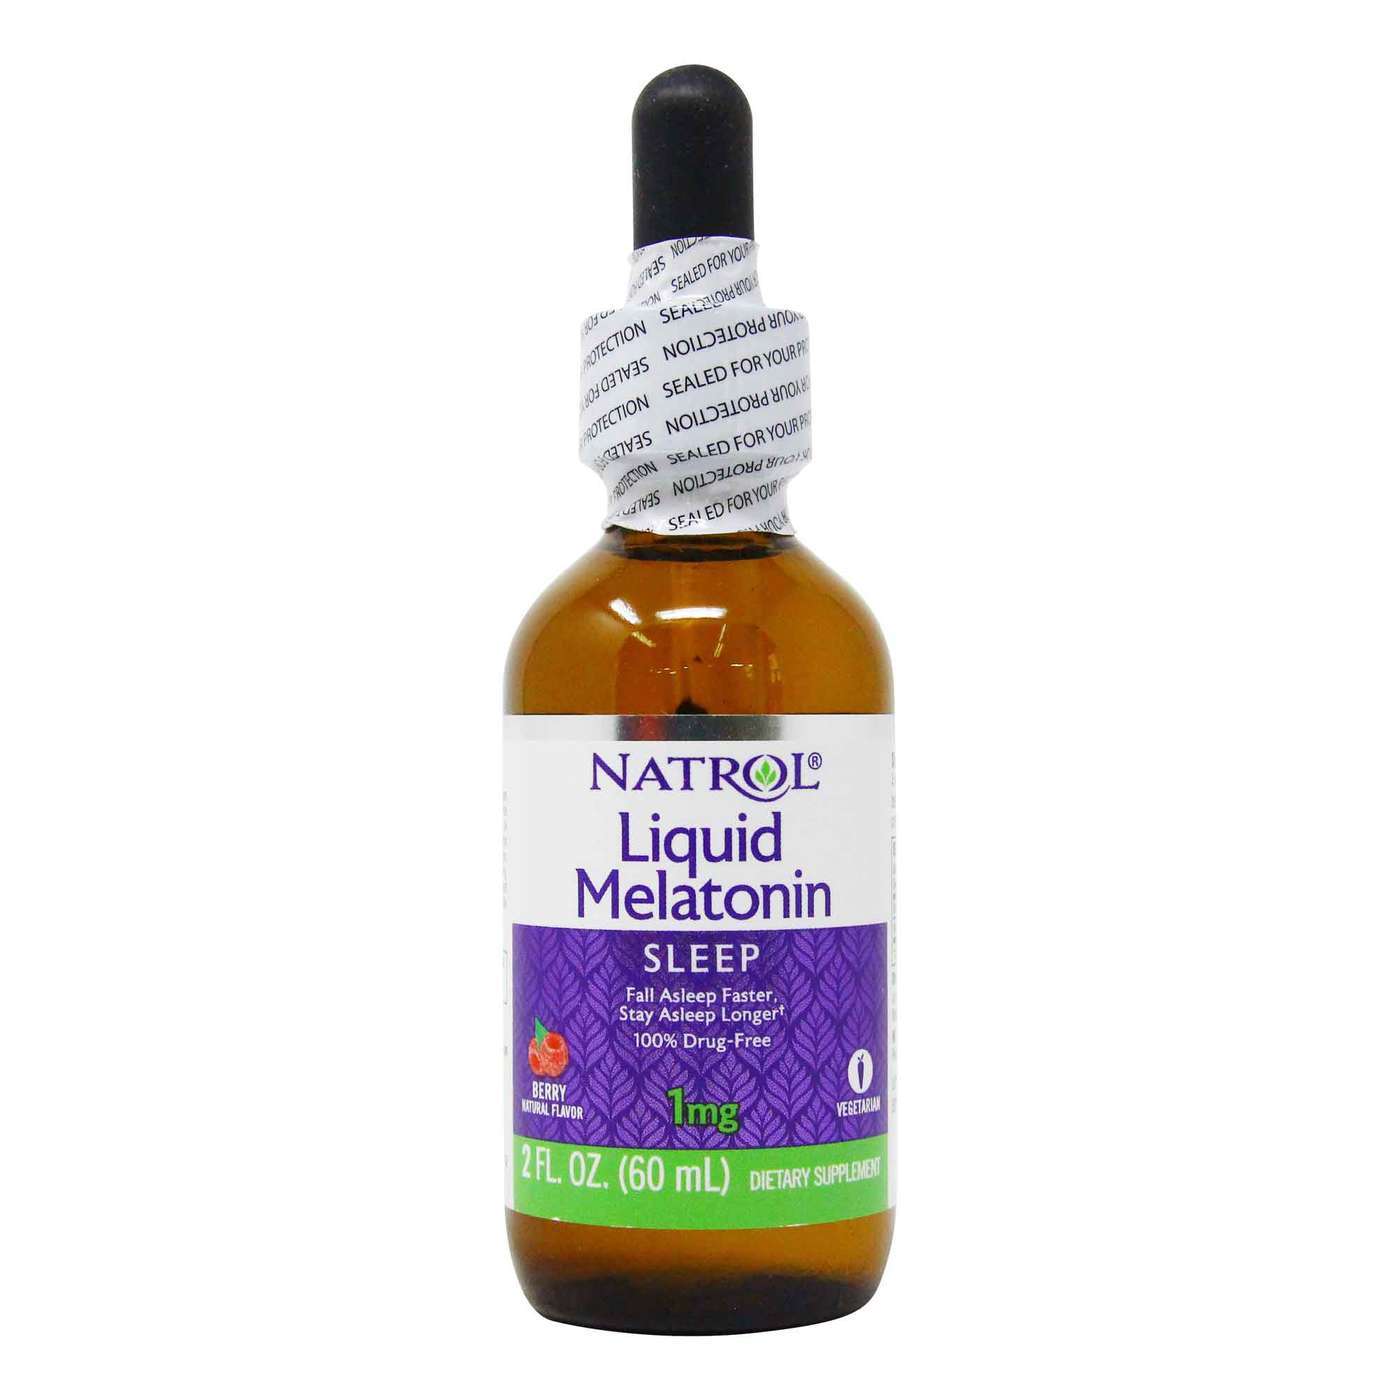 Natrol liquid melatonin benabar